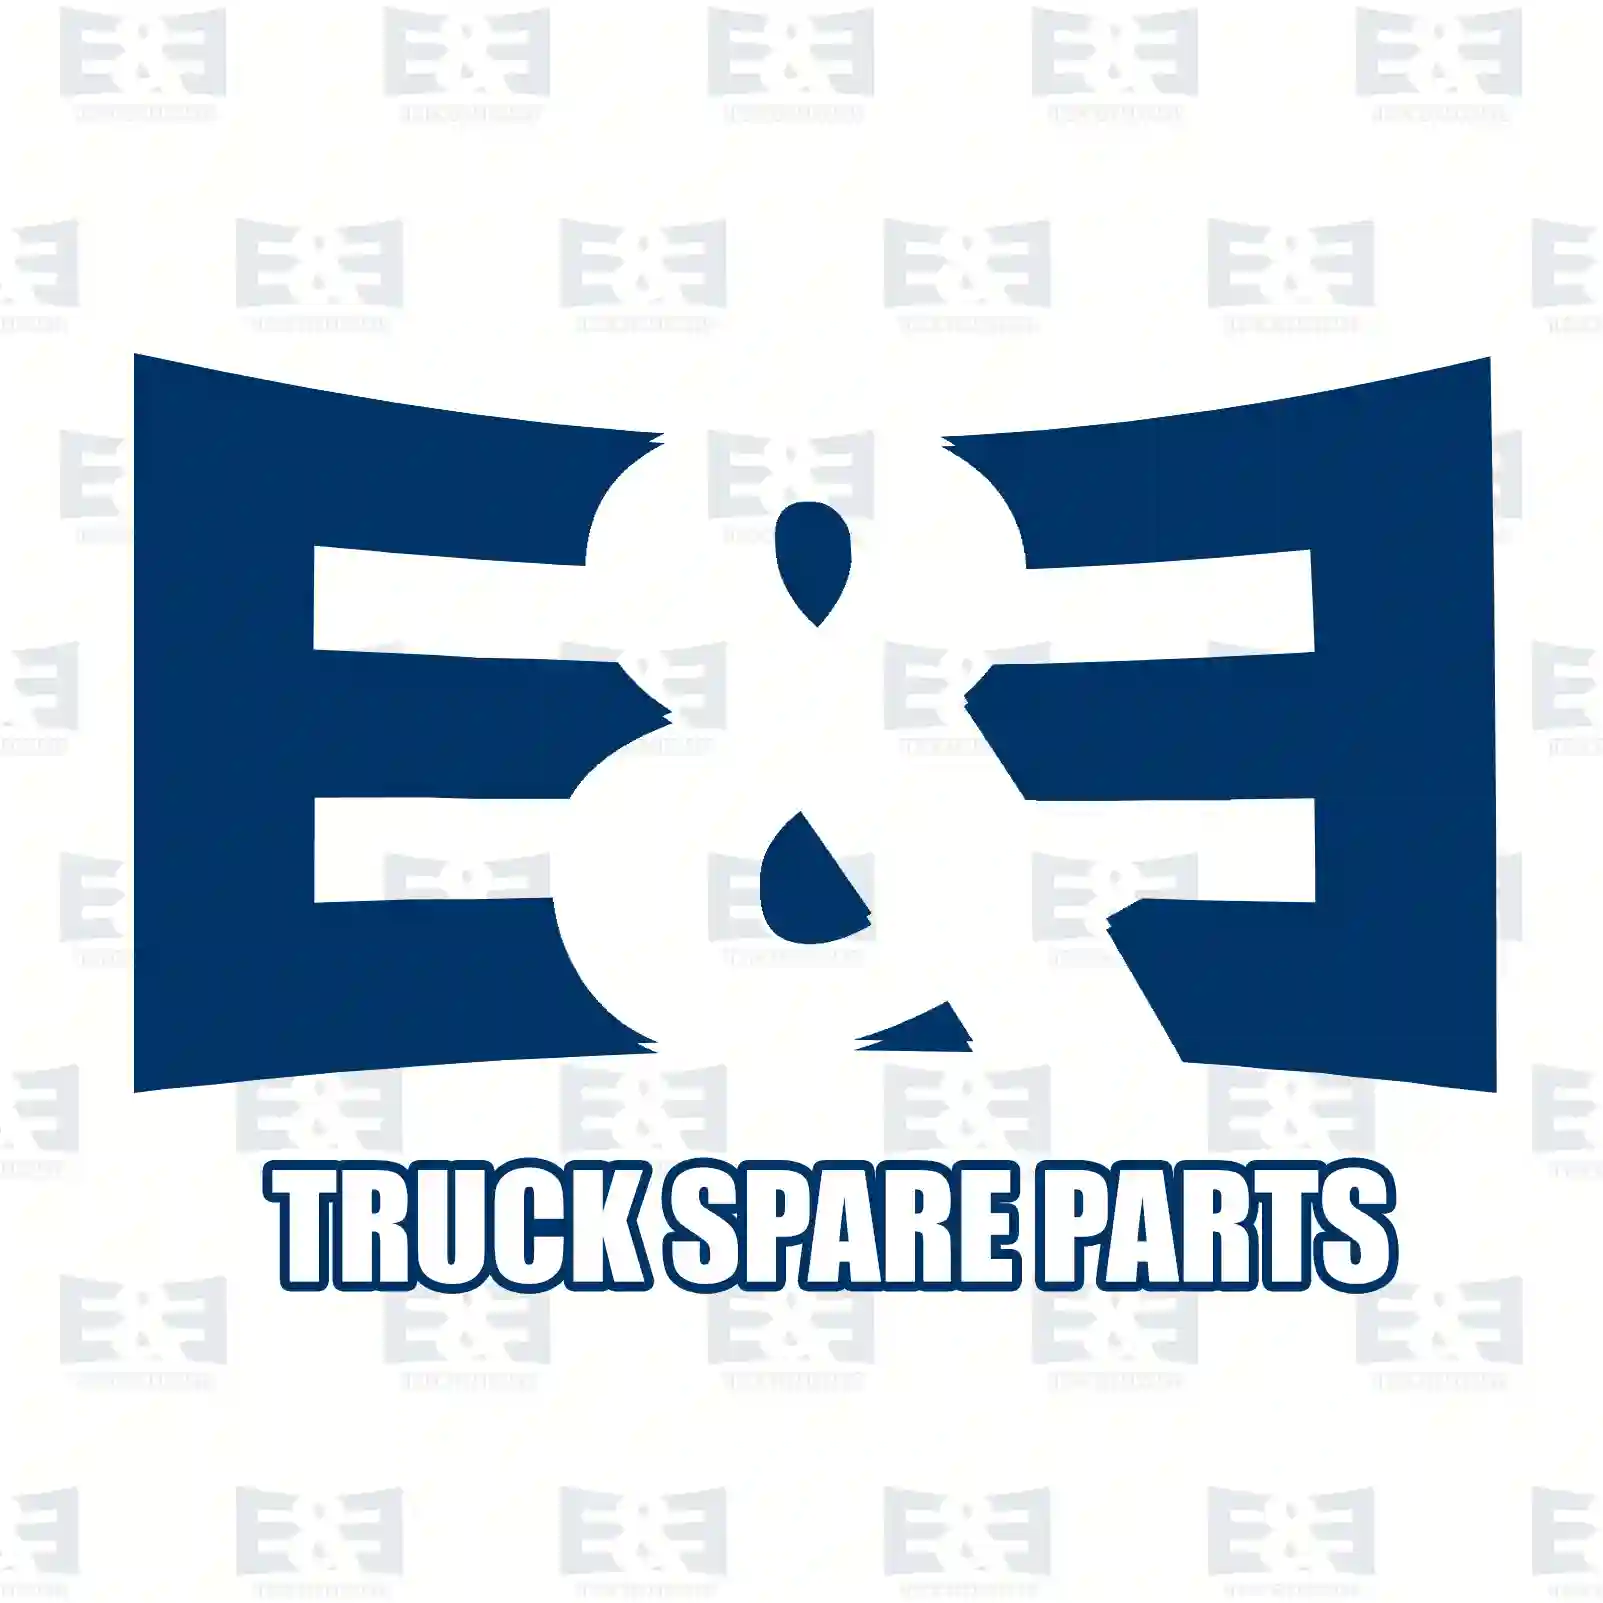 Clutch servo, 2E2287008, 504086387, 504151459, 5801317167 ||  2E2287008 E&E Truck Spare Parts | Truck Spare Parts, Auotomotive Spare Parts Clutch servo, 2E2287008, 504086387, 504151459, 5801317167 ||  2E2287008 E&E Truck Spare Parts | Truck Spare Parts, Auotomotive Spare Parts